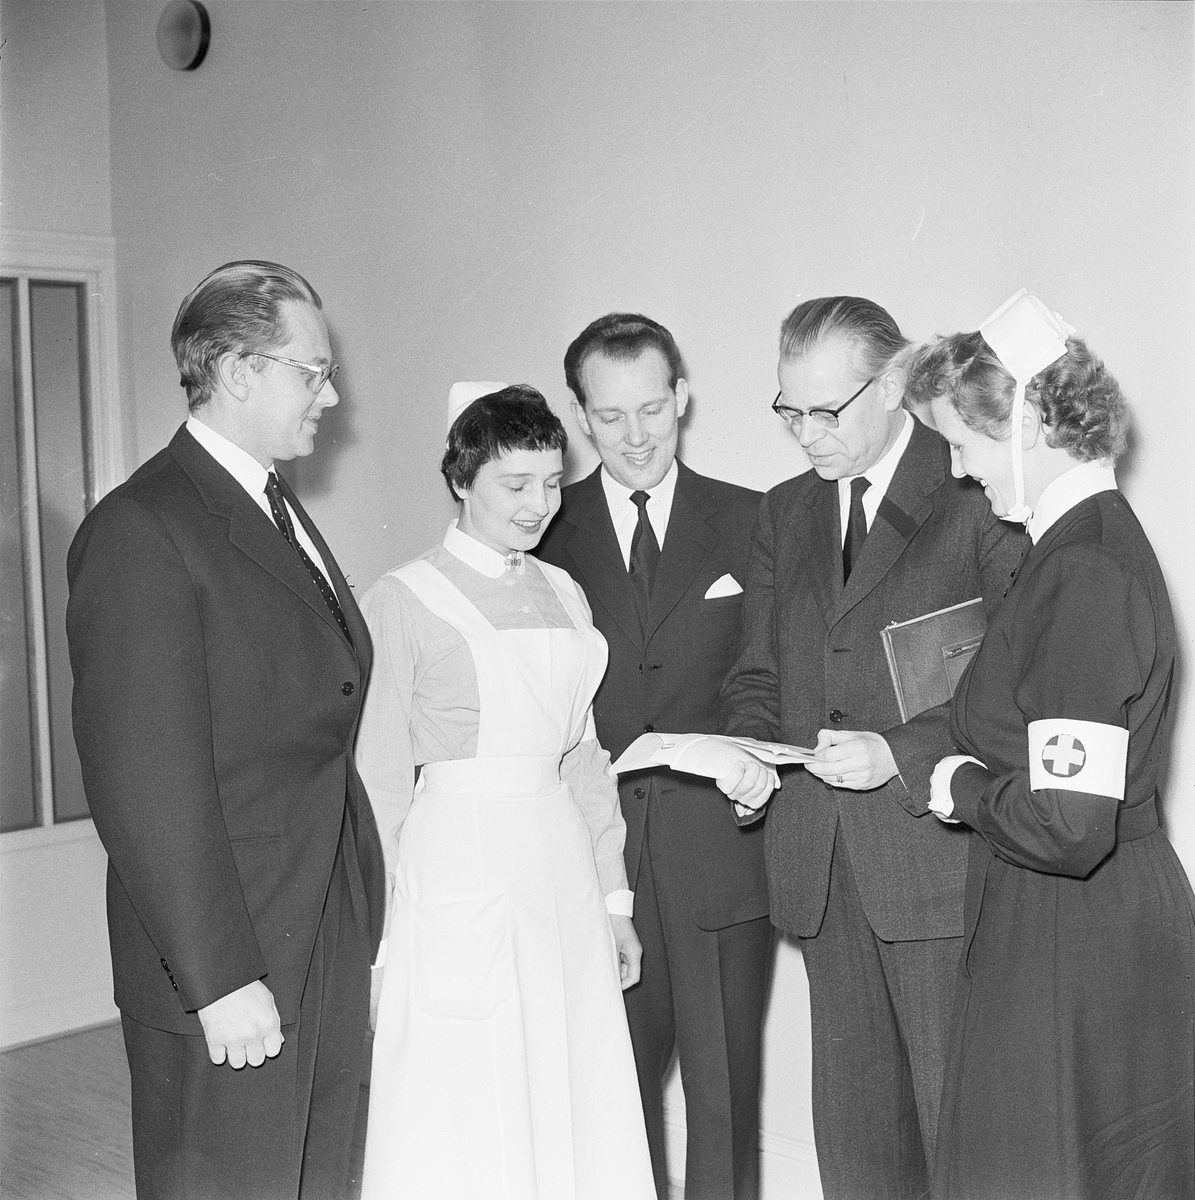 Diskussion om mentalsjukvård på Ulleråkers sjukhus, Uppsala 1953